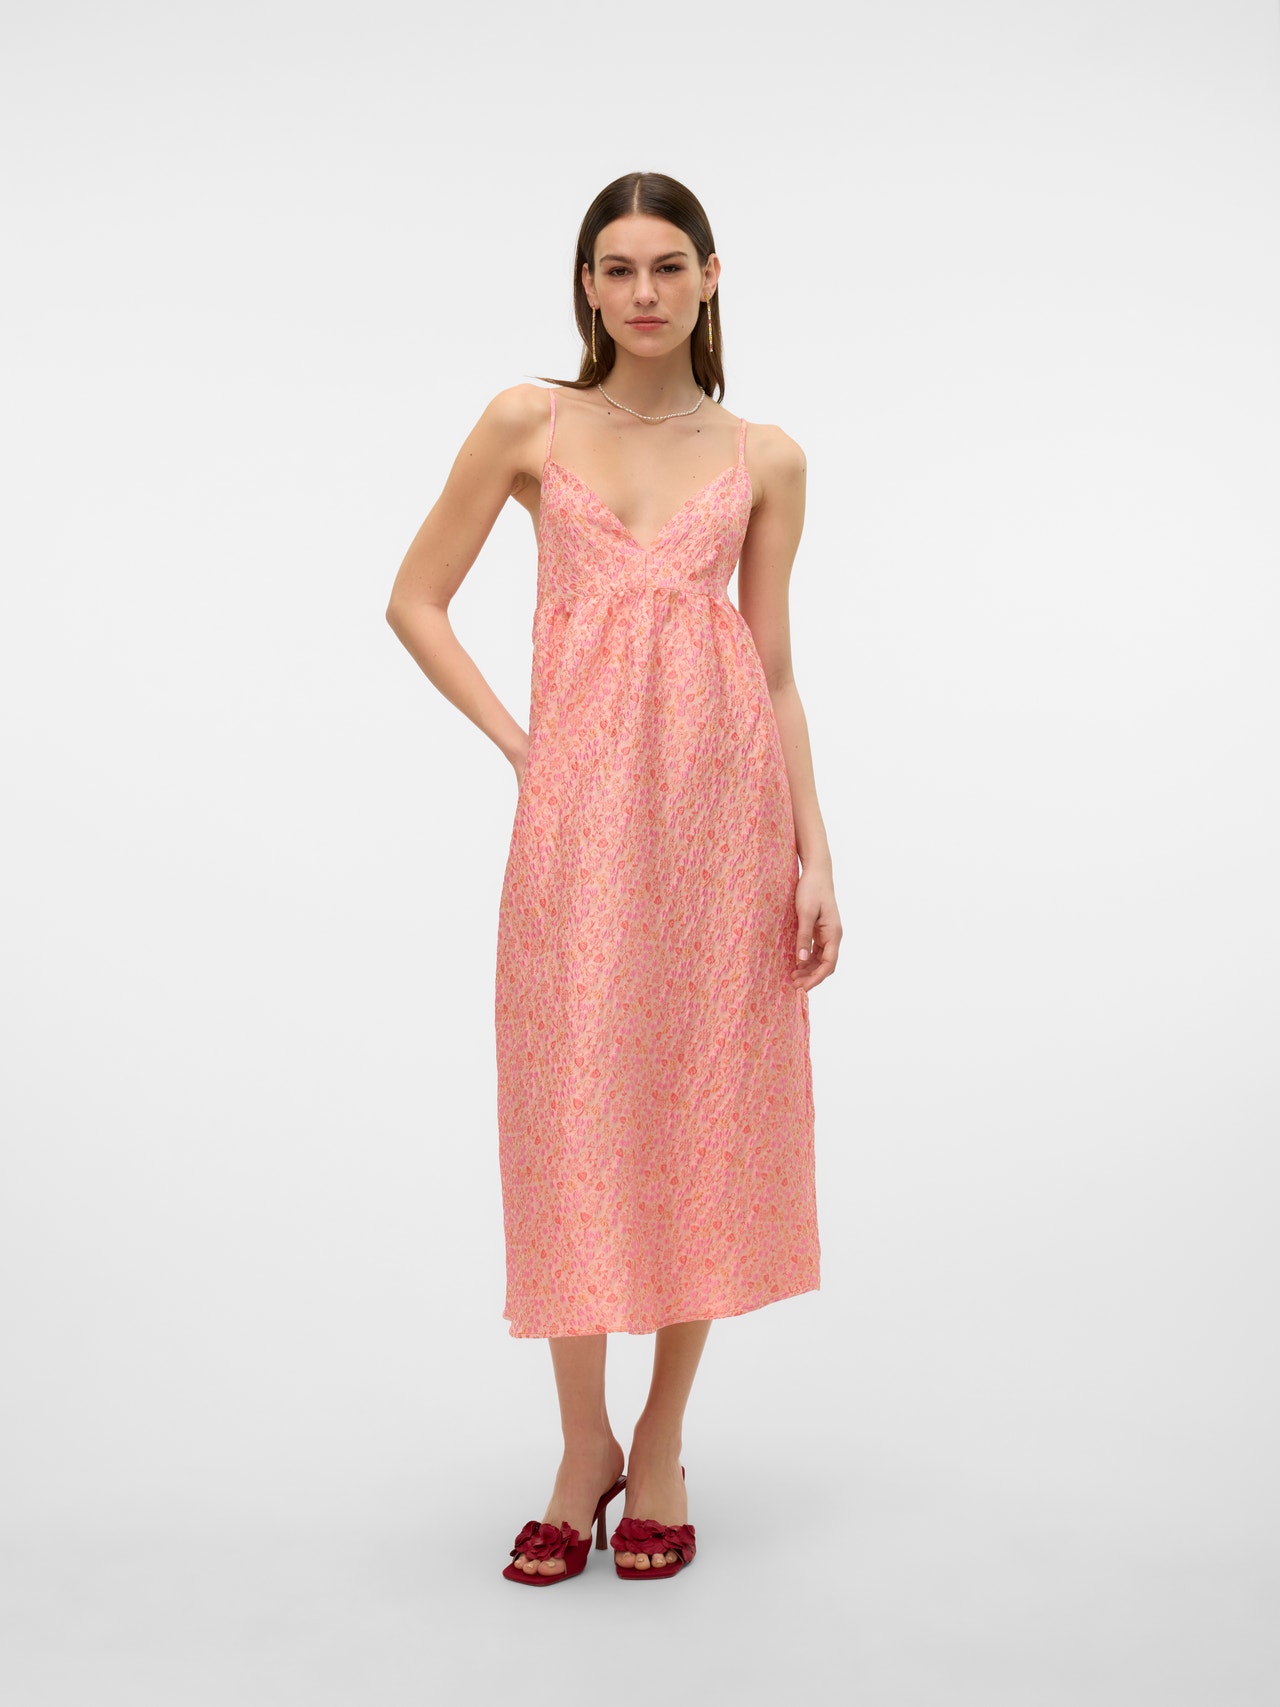 Vero Moda VMCELESTE Lang kjole -Peach Fuzz - 10322656